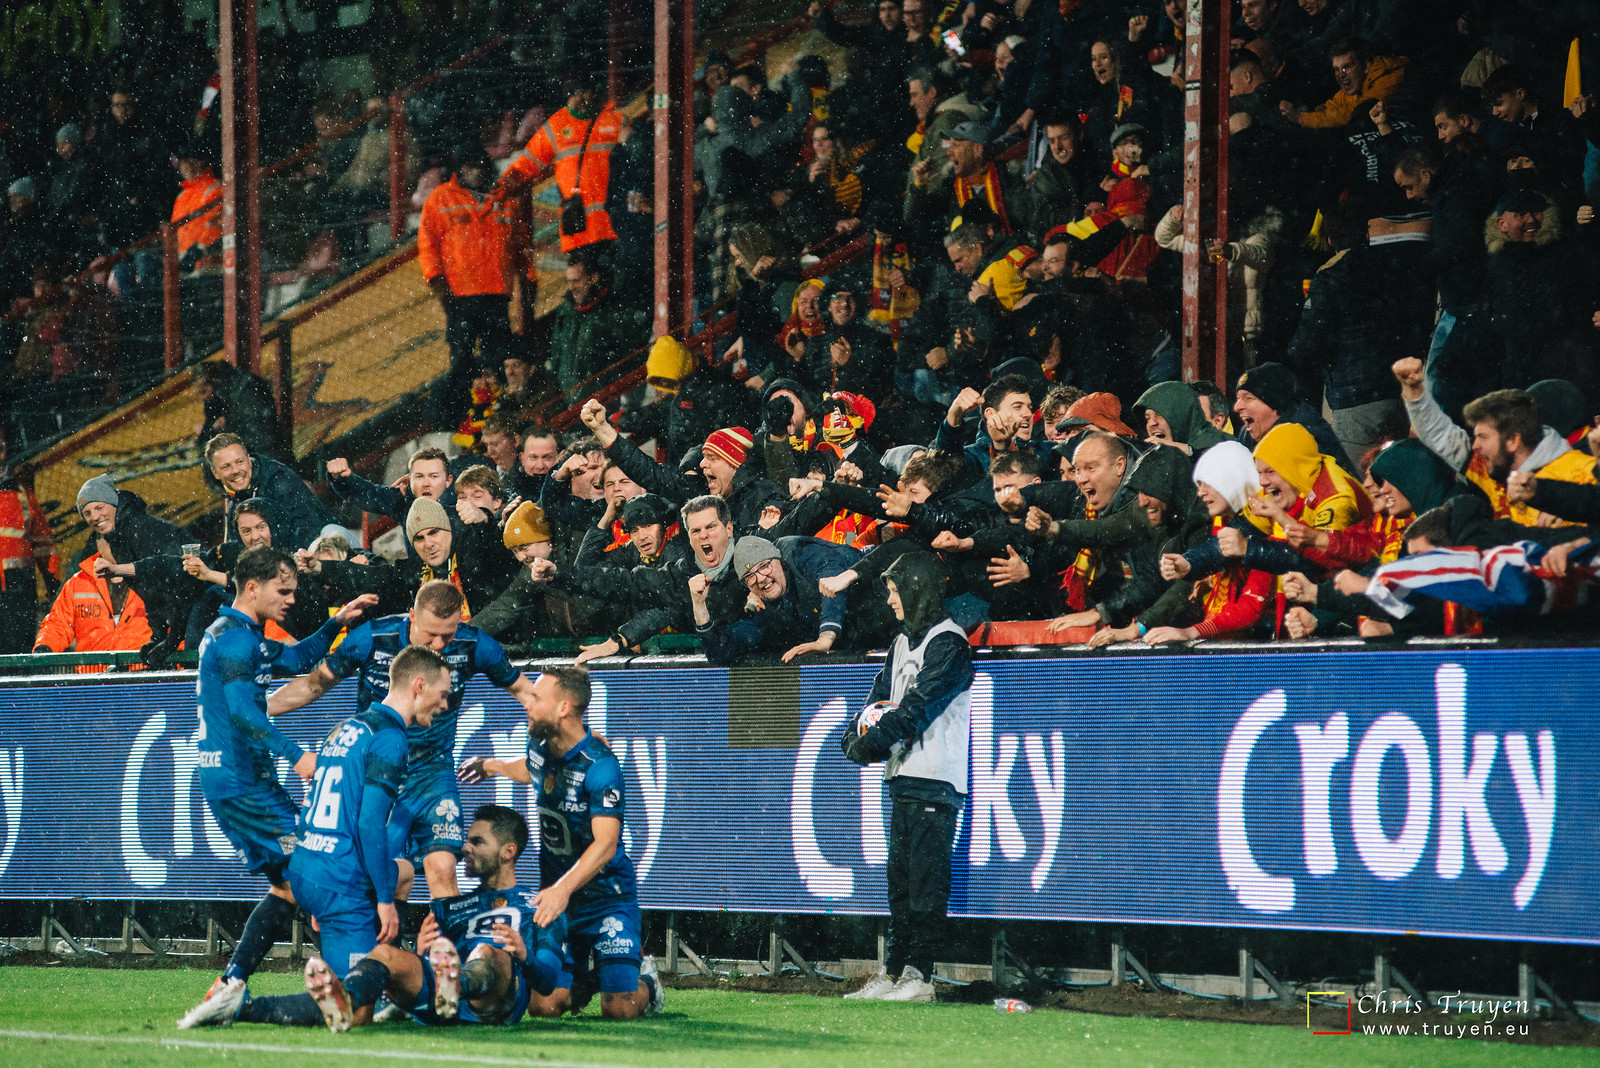 KV Kortrijk - KV Mechelen (BvB) (0-1)